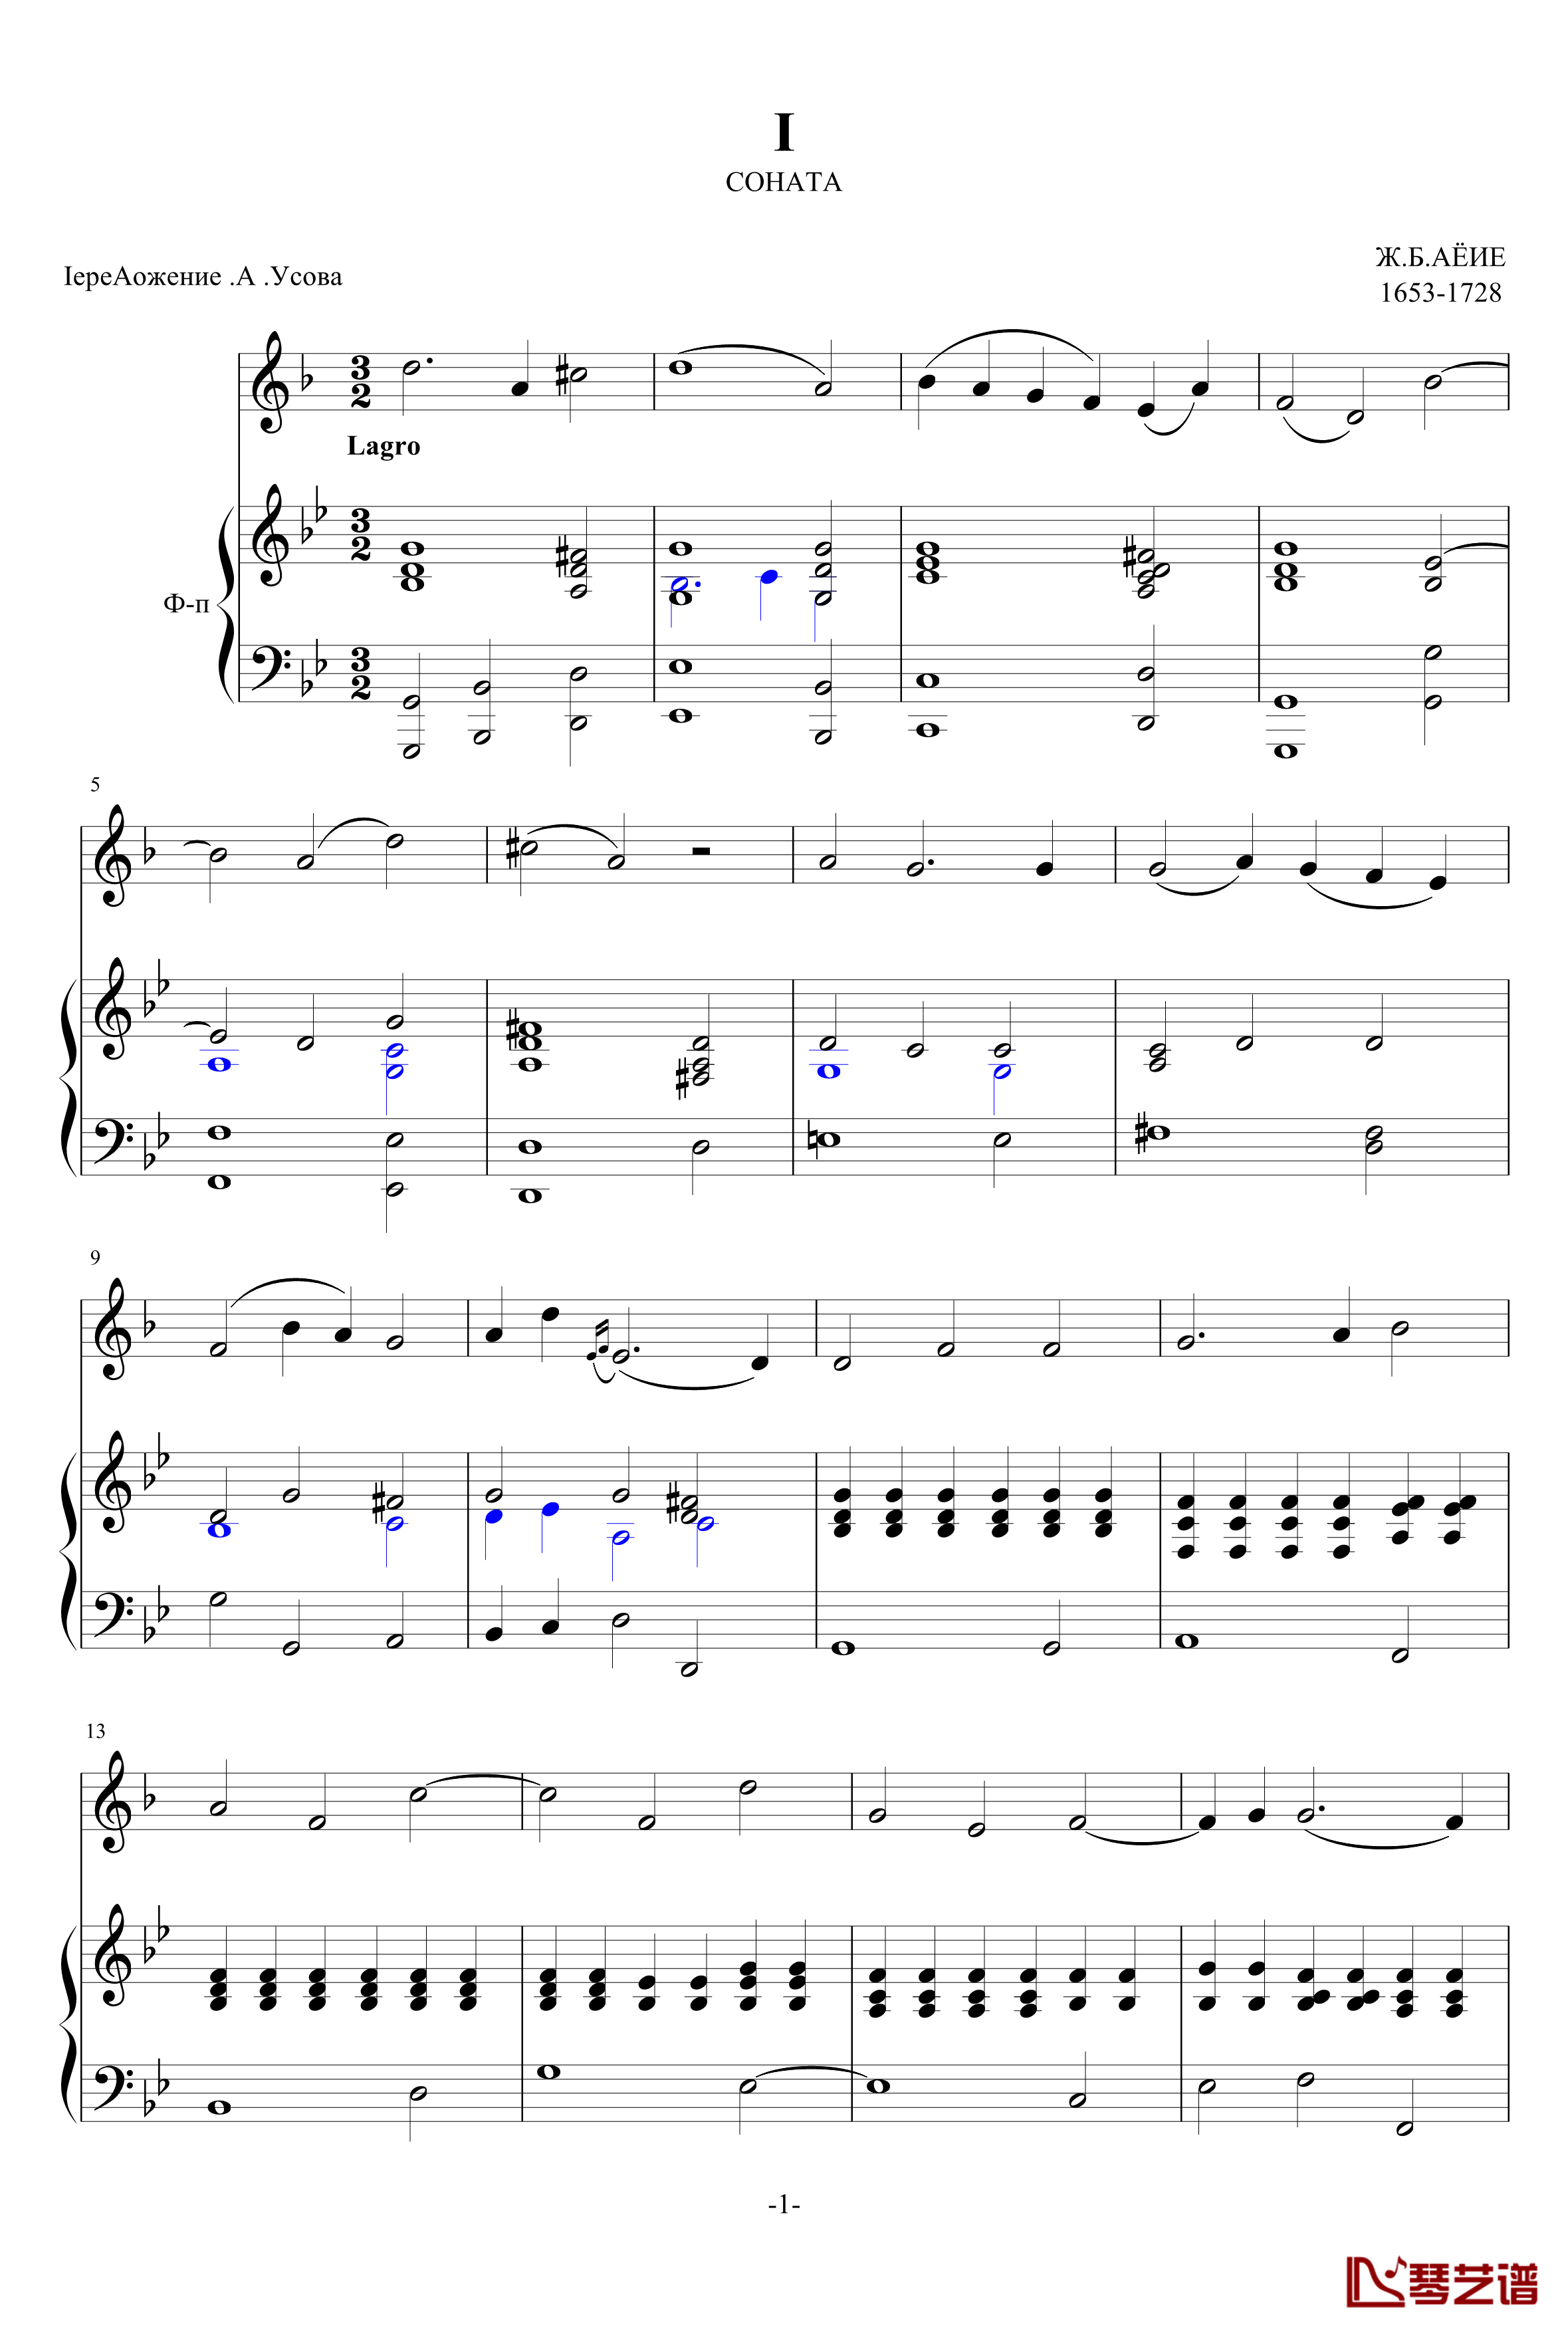 日·贝·廖耶奏鸣曲第一乐章钢琴谱-日·贝·廖耶1